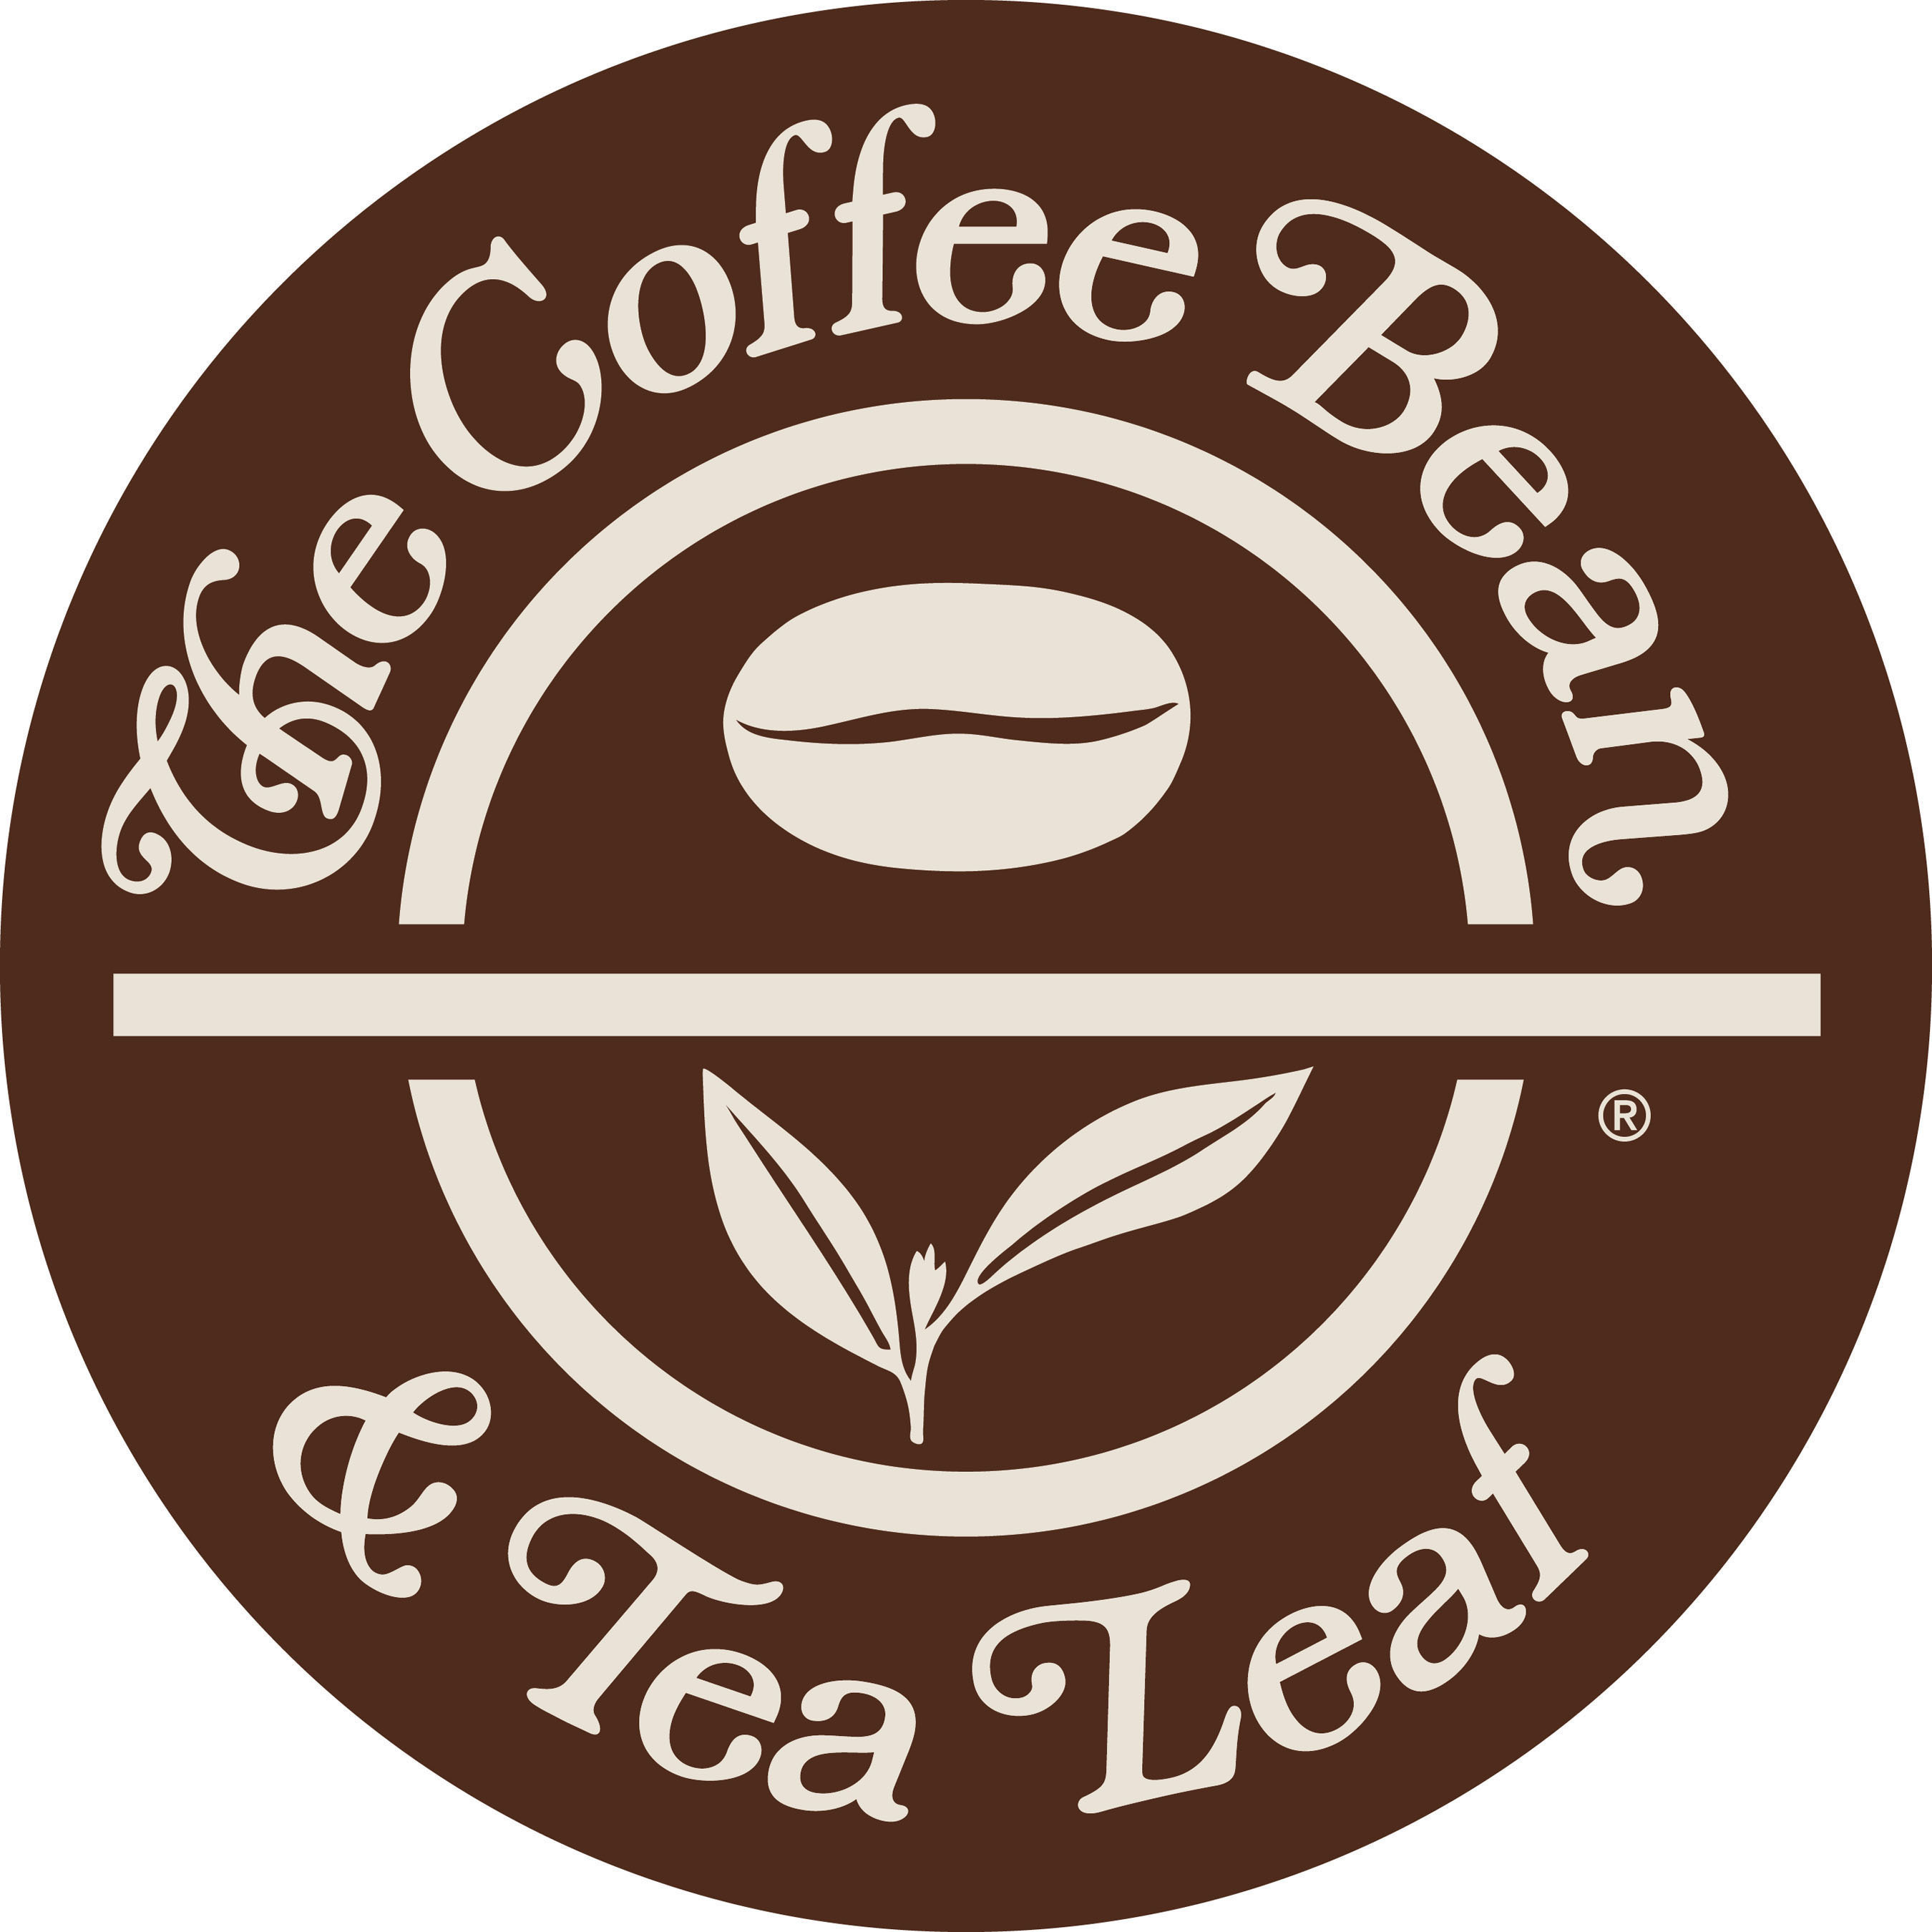 The Coffee Bean & Tea Leaf Logo.